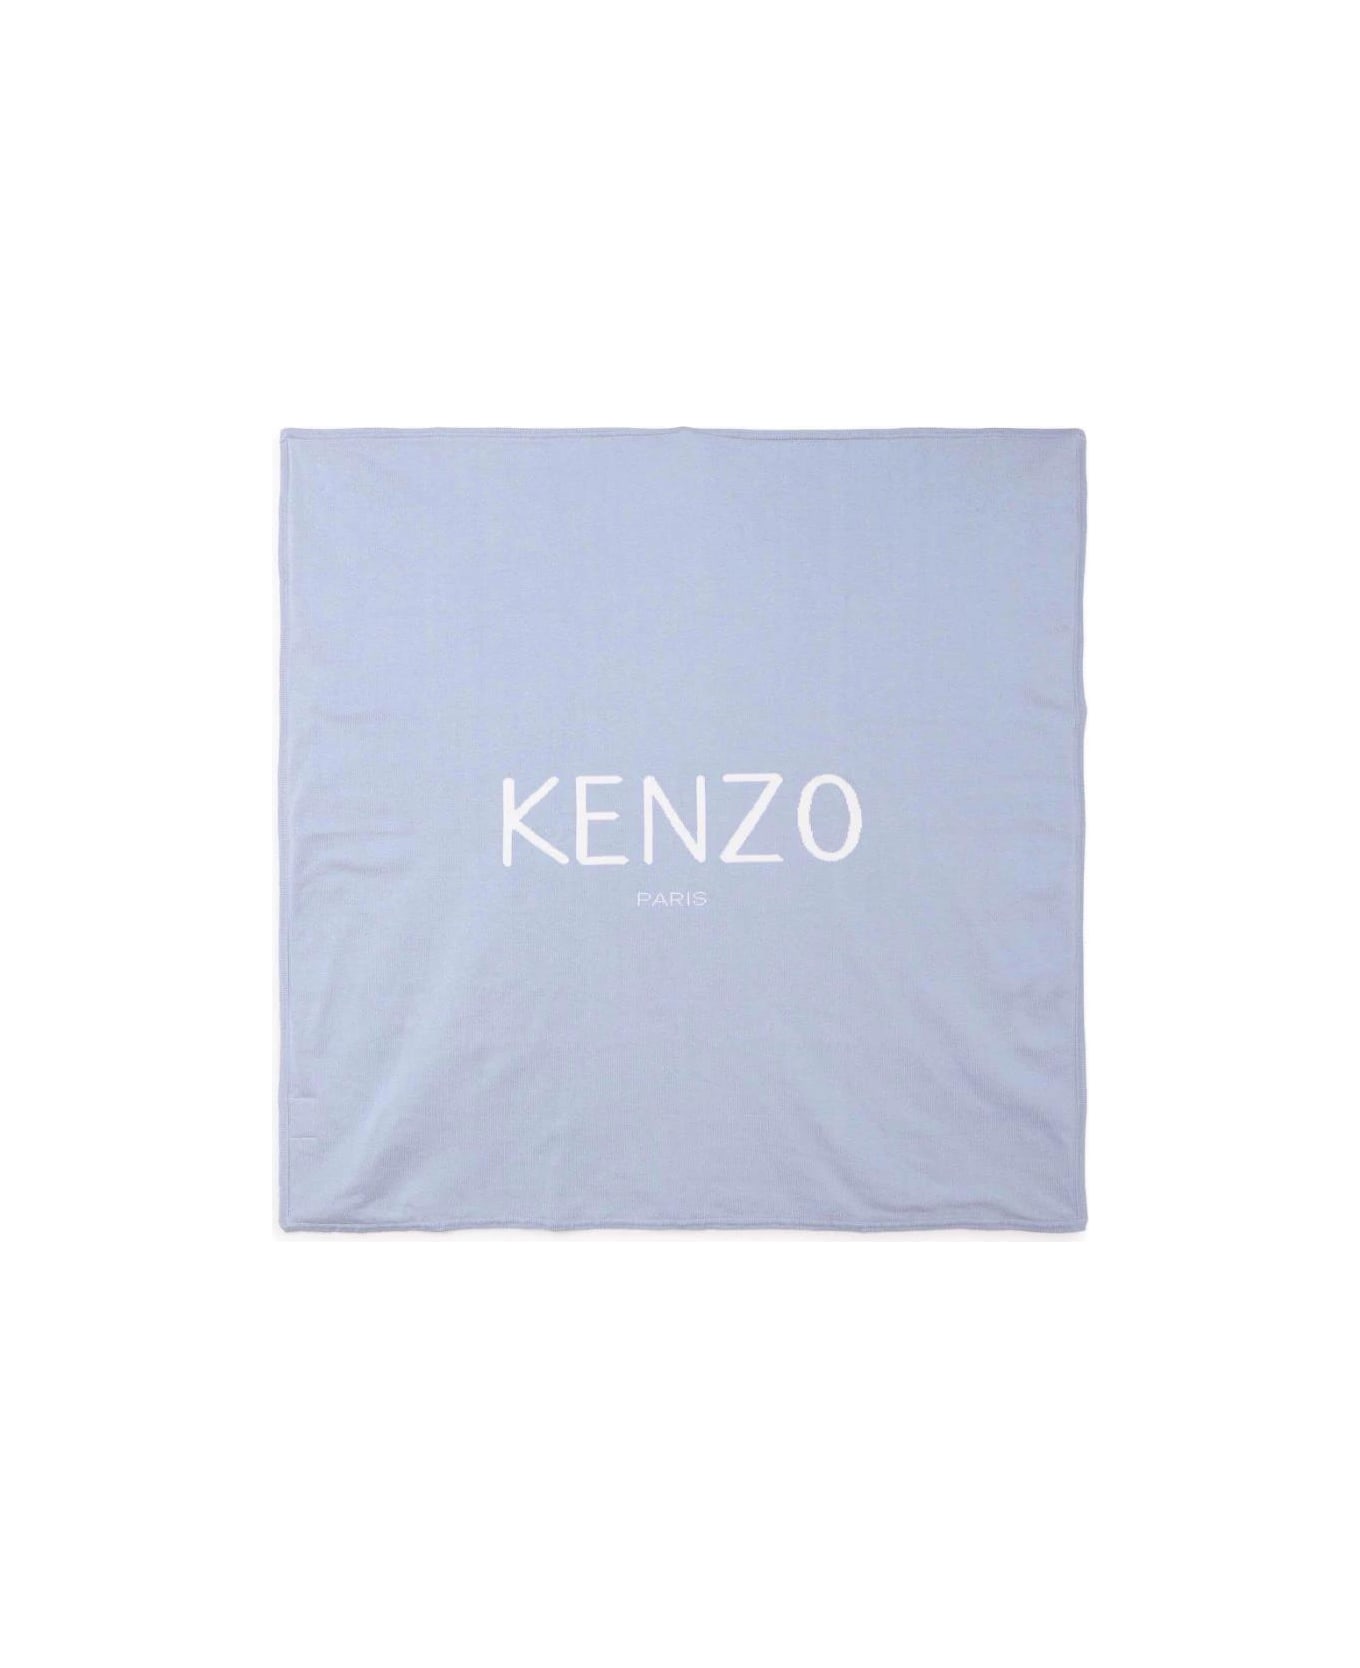 Kenzo Kids Kenzo Coperta Celeste In Maglia Di Cotone Baby Boy - Celeste アクセサリー＆ギフト